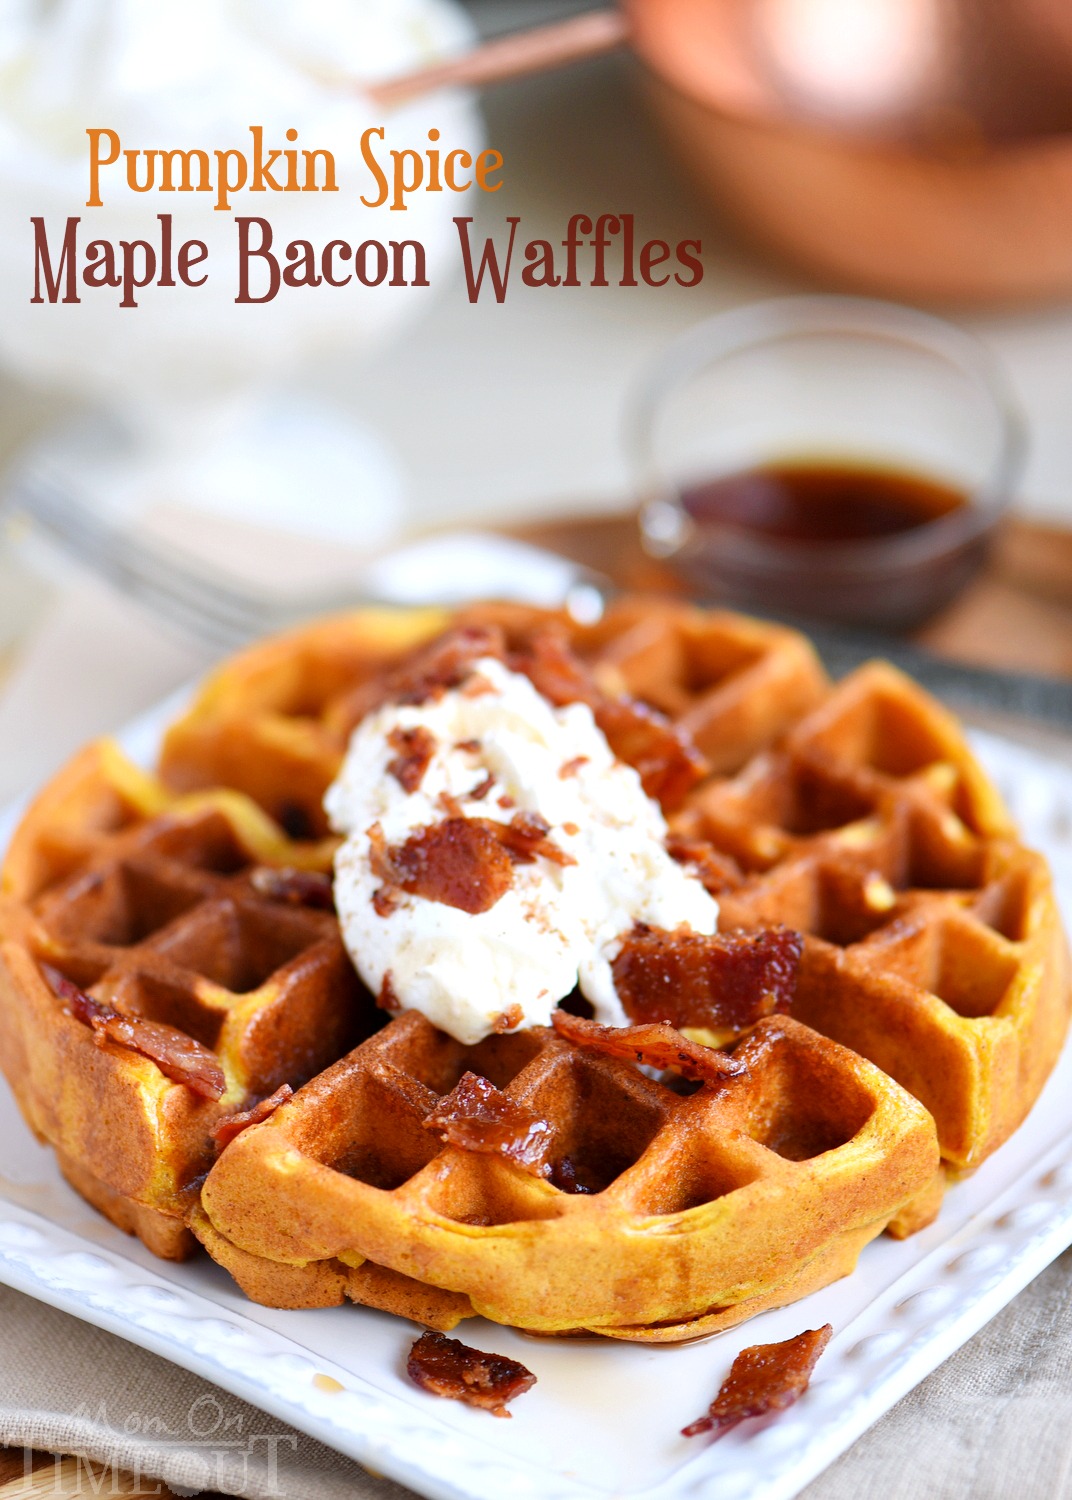 https://www.momontimeout.com/wp-content/uploads/2016/11/pumpkin-spice-maple-bacon-waffles-recipe.jpg